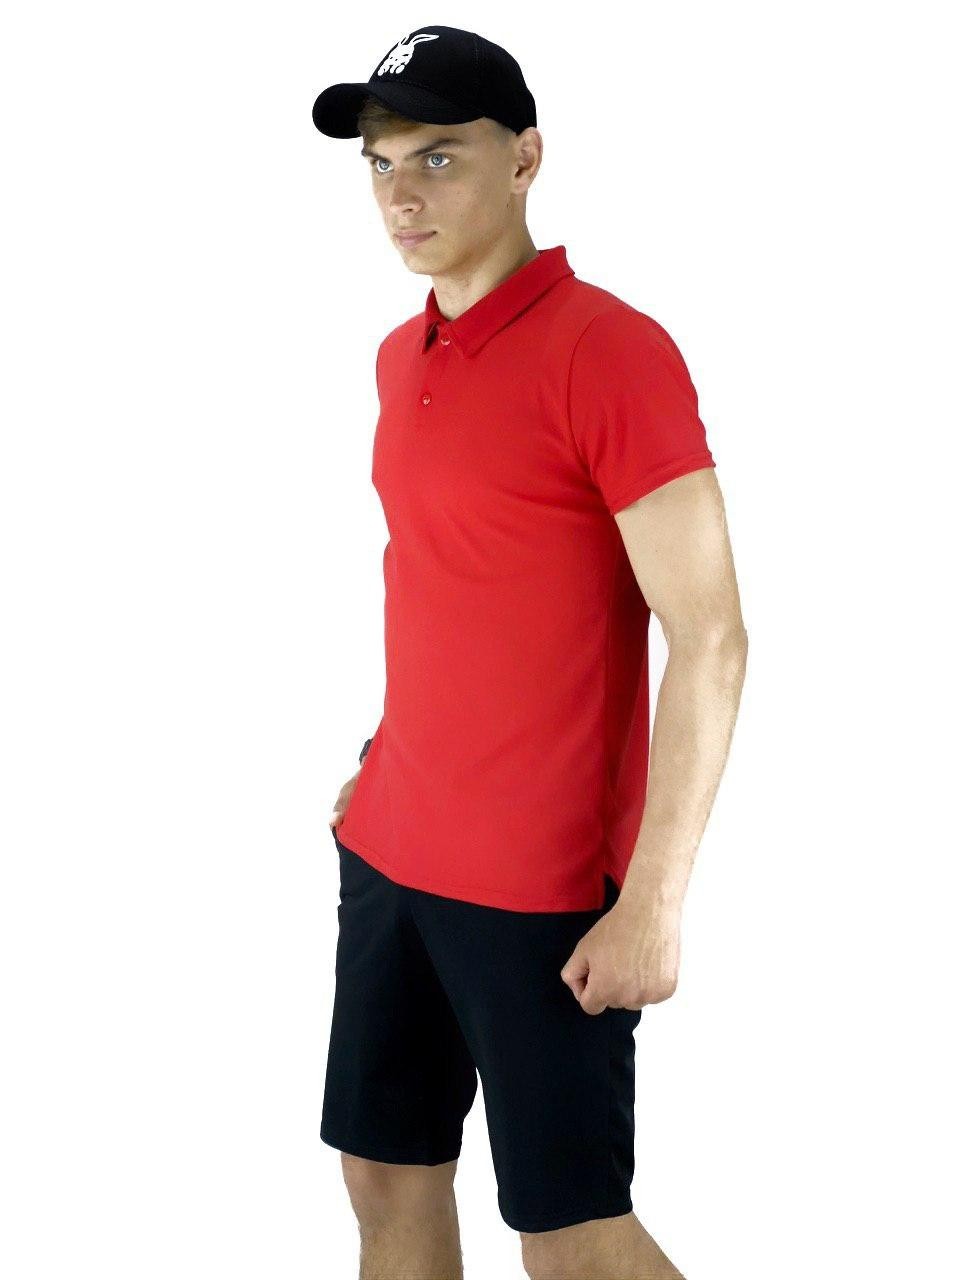 Костюм Intruder LaCosta річний (Чоловіча футболка поло, Чоловічі шорти трикотажні) червоно - чорний M Intruder